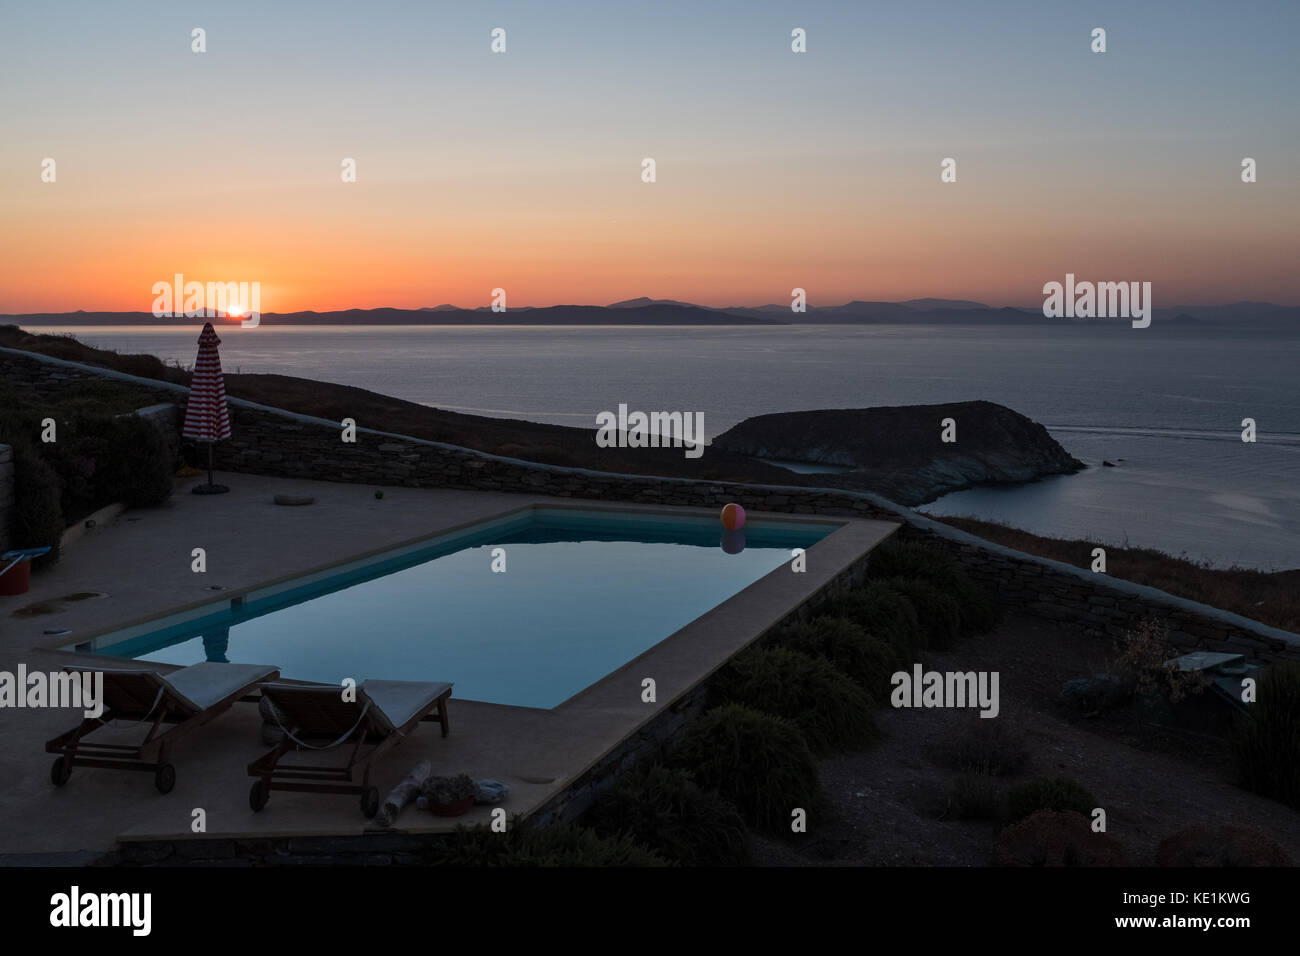 Piscine donnant sur la mer Égée au coucher du soleil, kea, grrece Banque D'Images